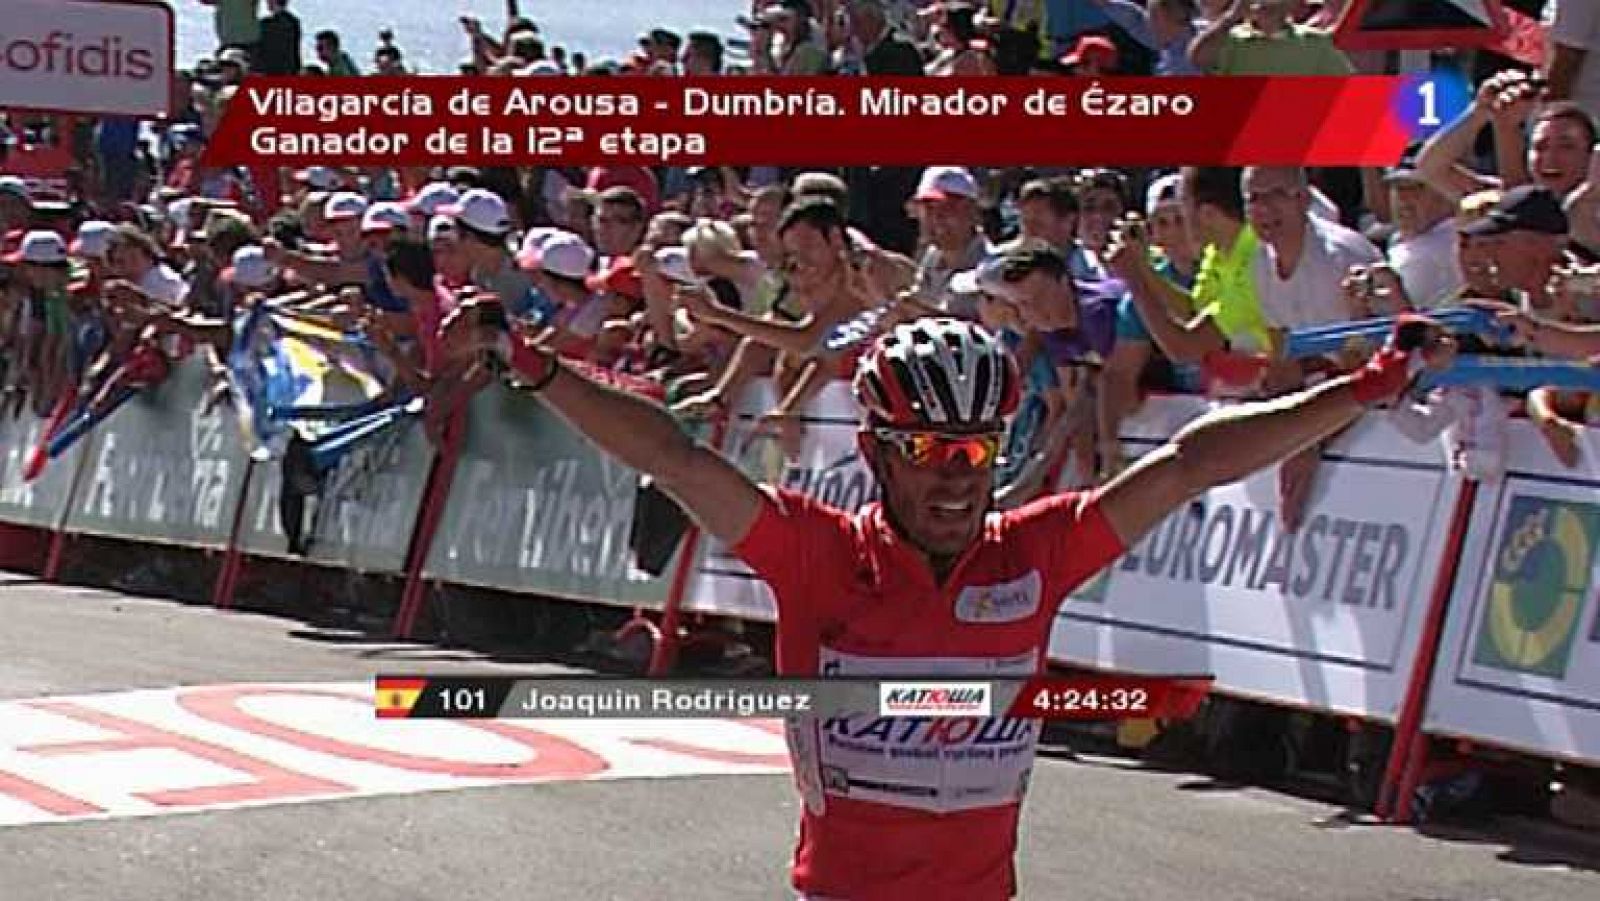 Vuelta ciclista a España 2012 - 12ª etapa: Vilagarcía de Arousa-Dumbia. Mirador de Ezaro